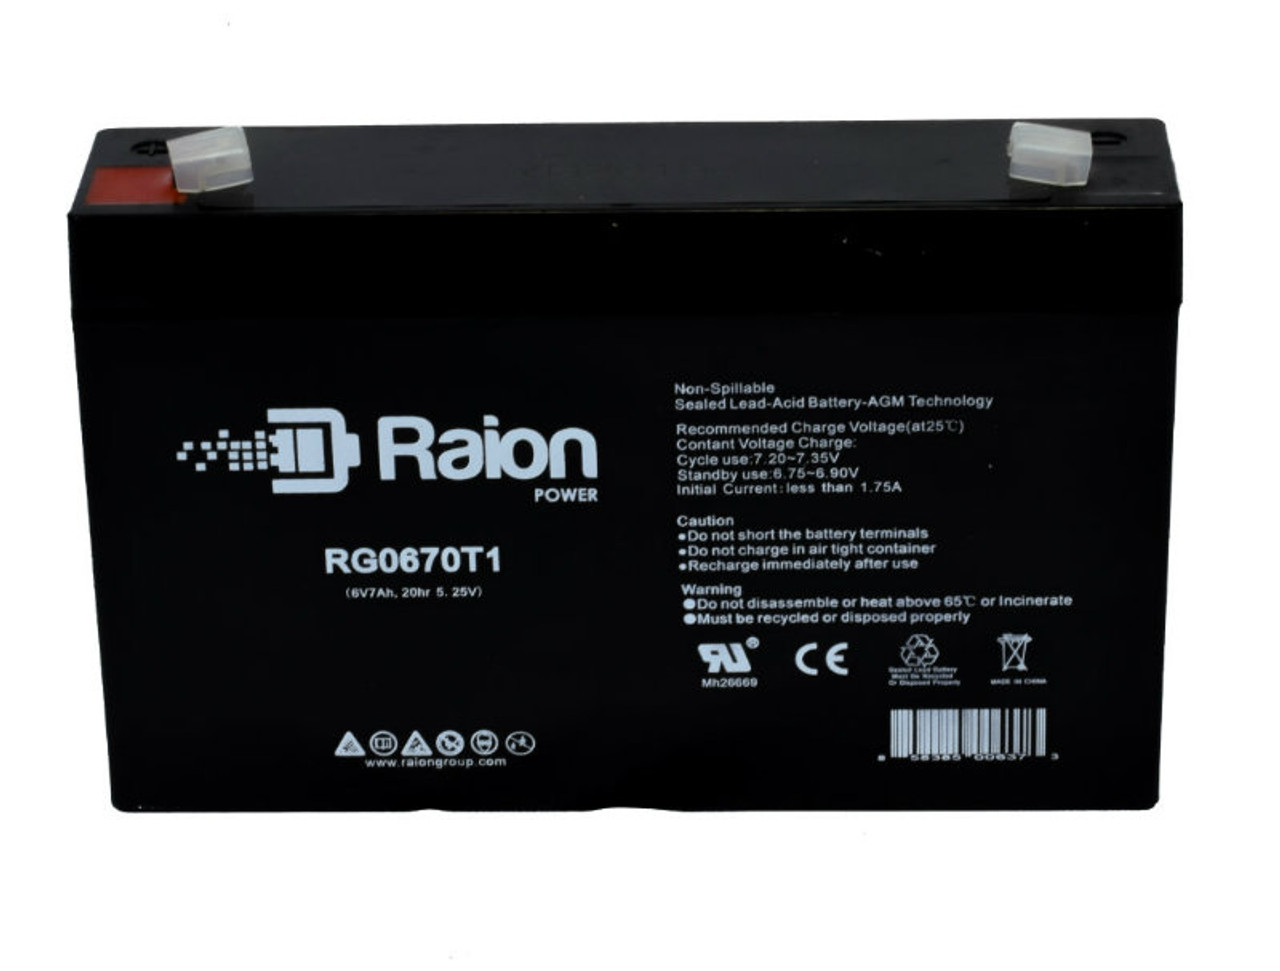 Raion Power RG0670T1 SLA Battery for Leadhoo NP7-6 OEM Battery